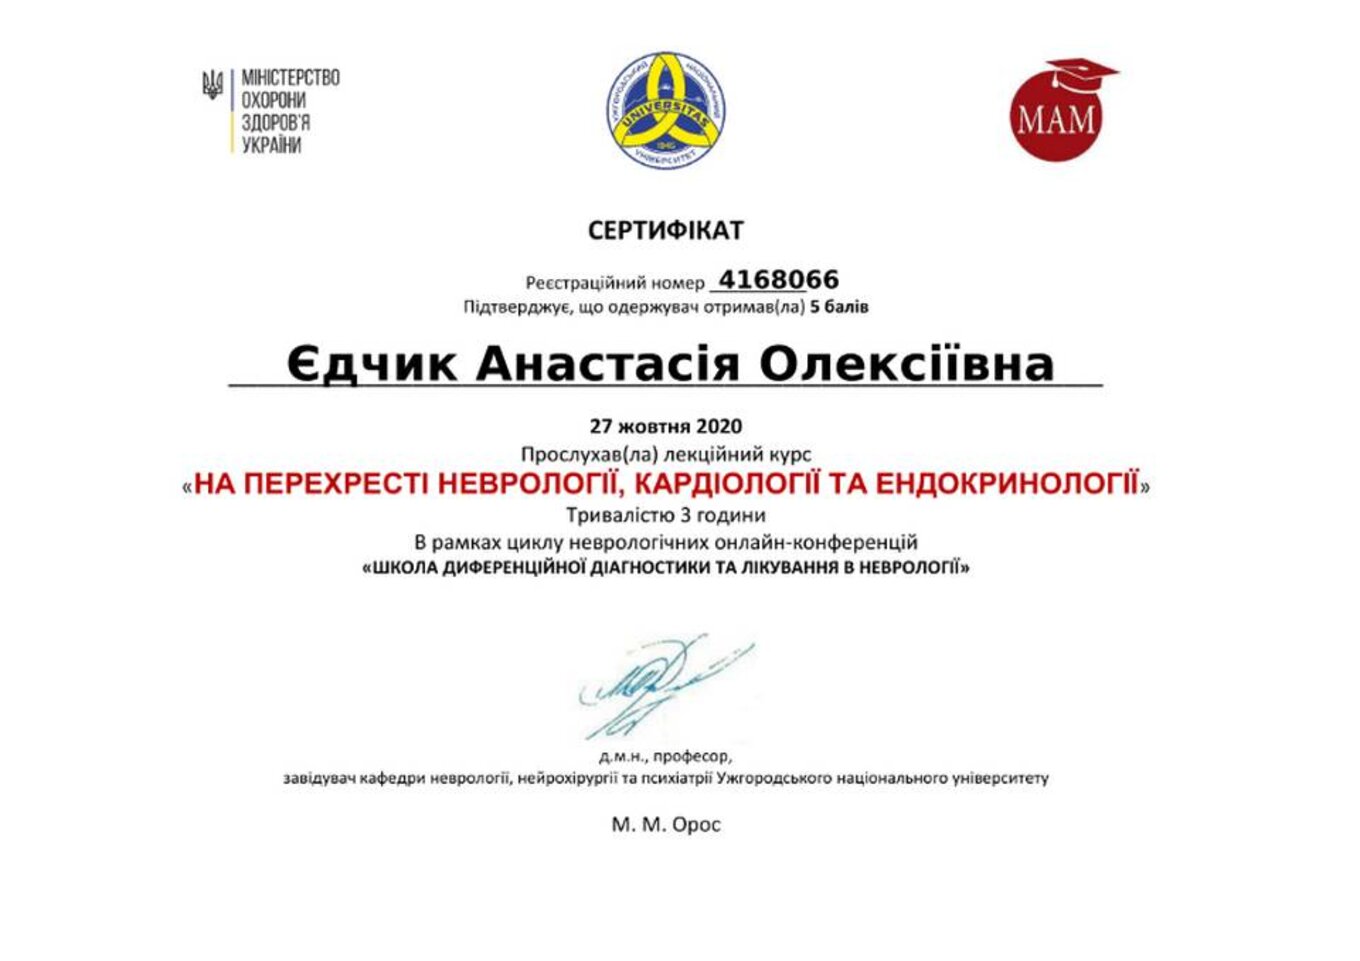 certificates/yedchik-anastasiya-oleksiyivna/erc-edchik-cert-98.jpg